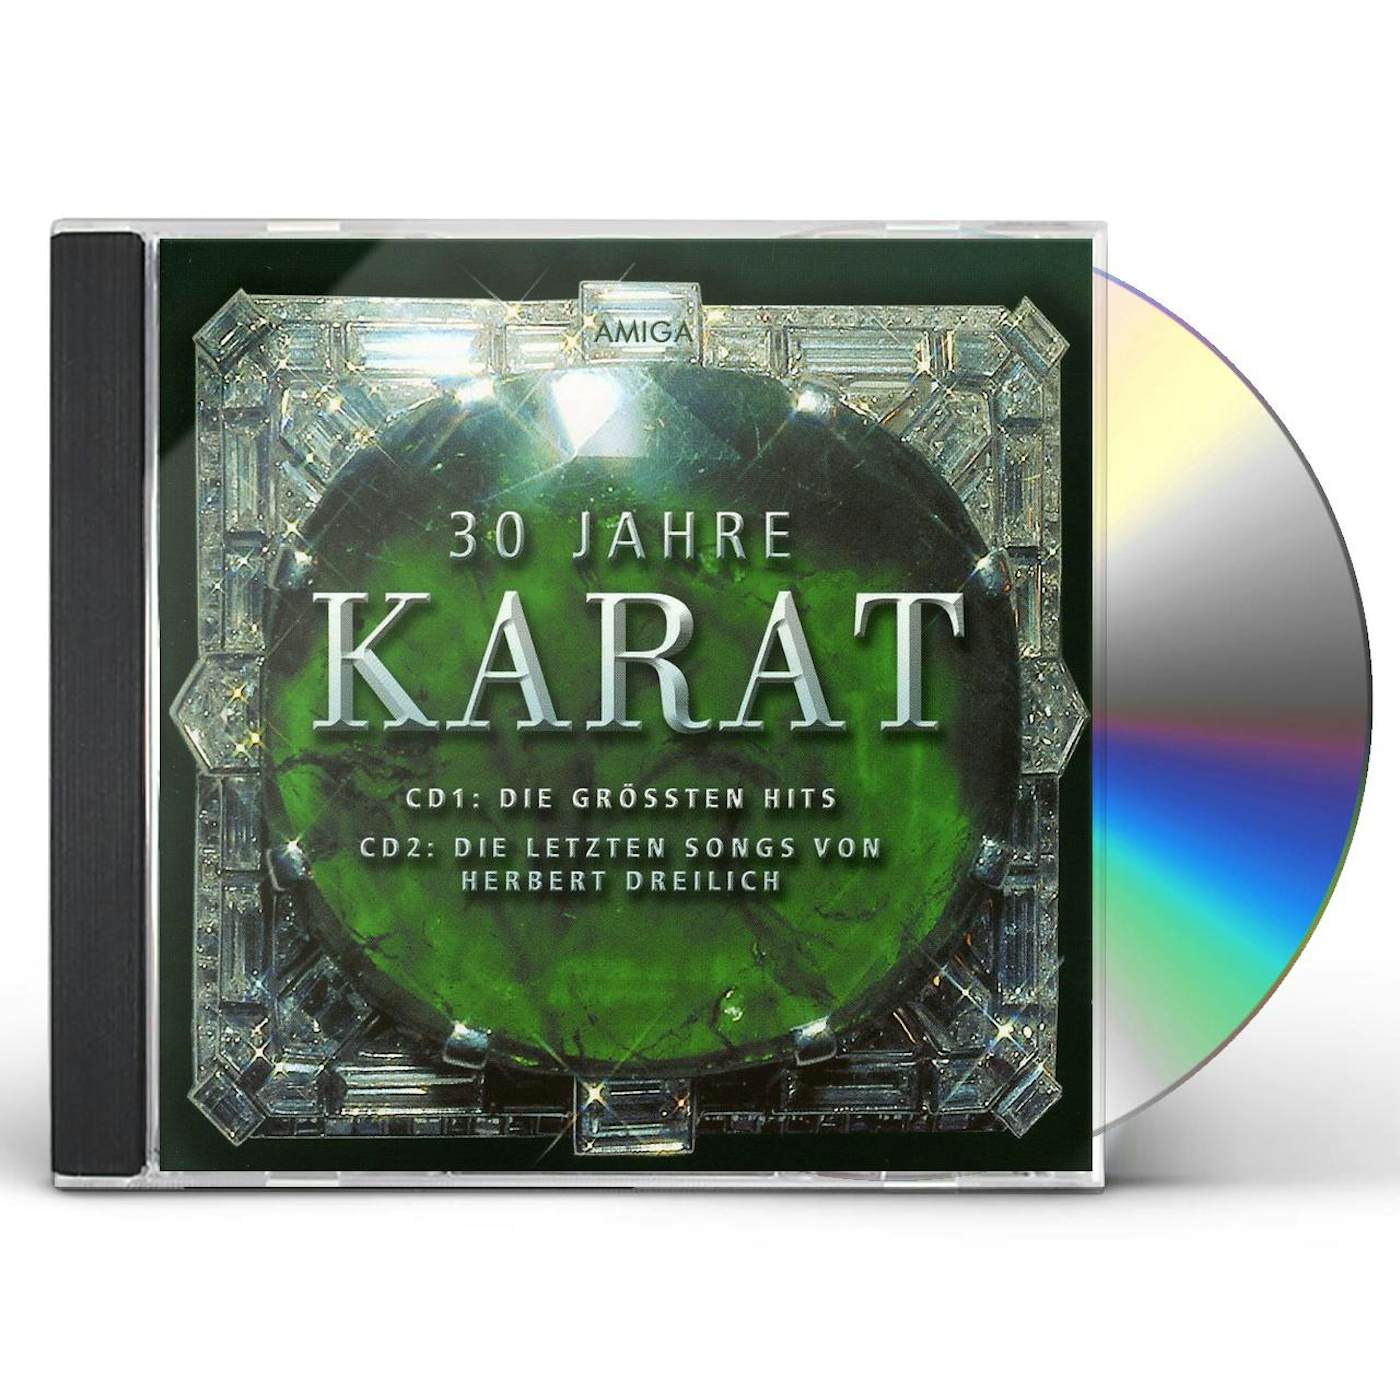 30 JAHRE KARAT CD